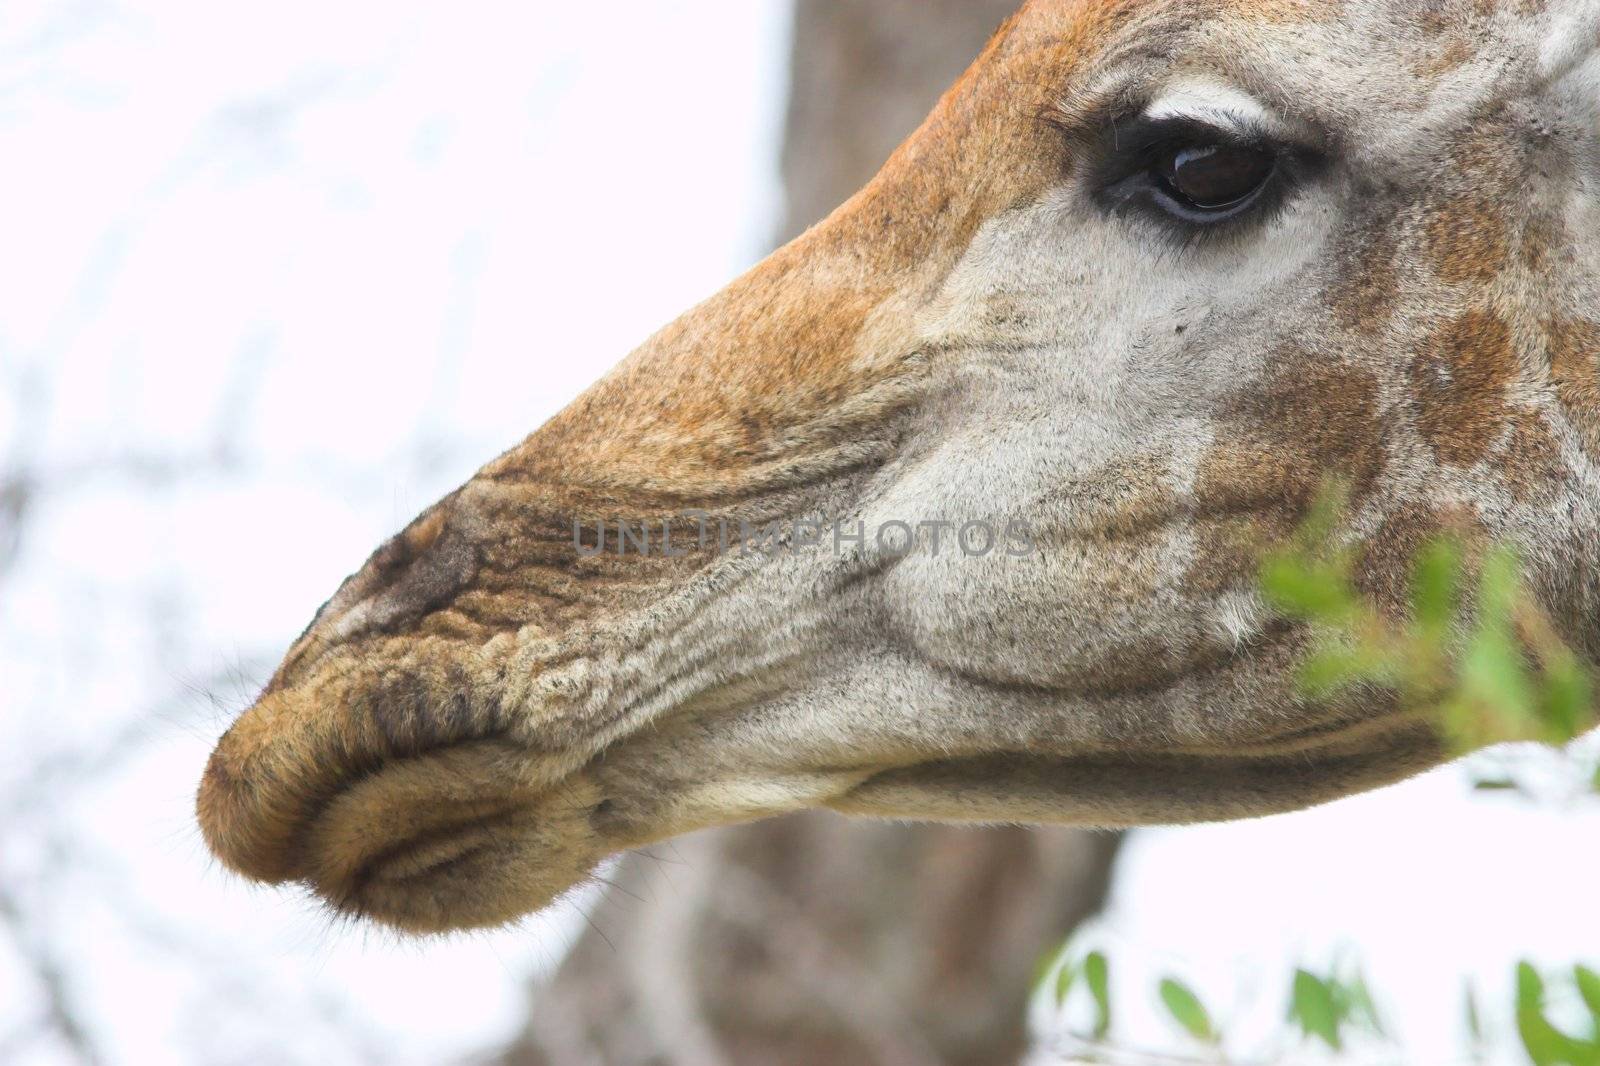 Close up portrait of a giraffe in Africa